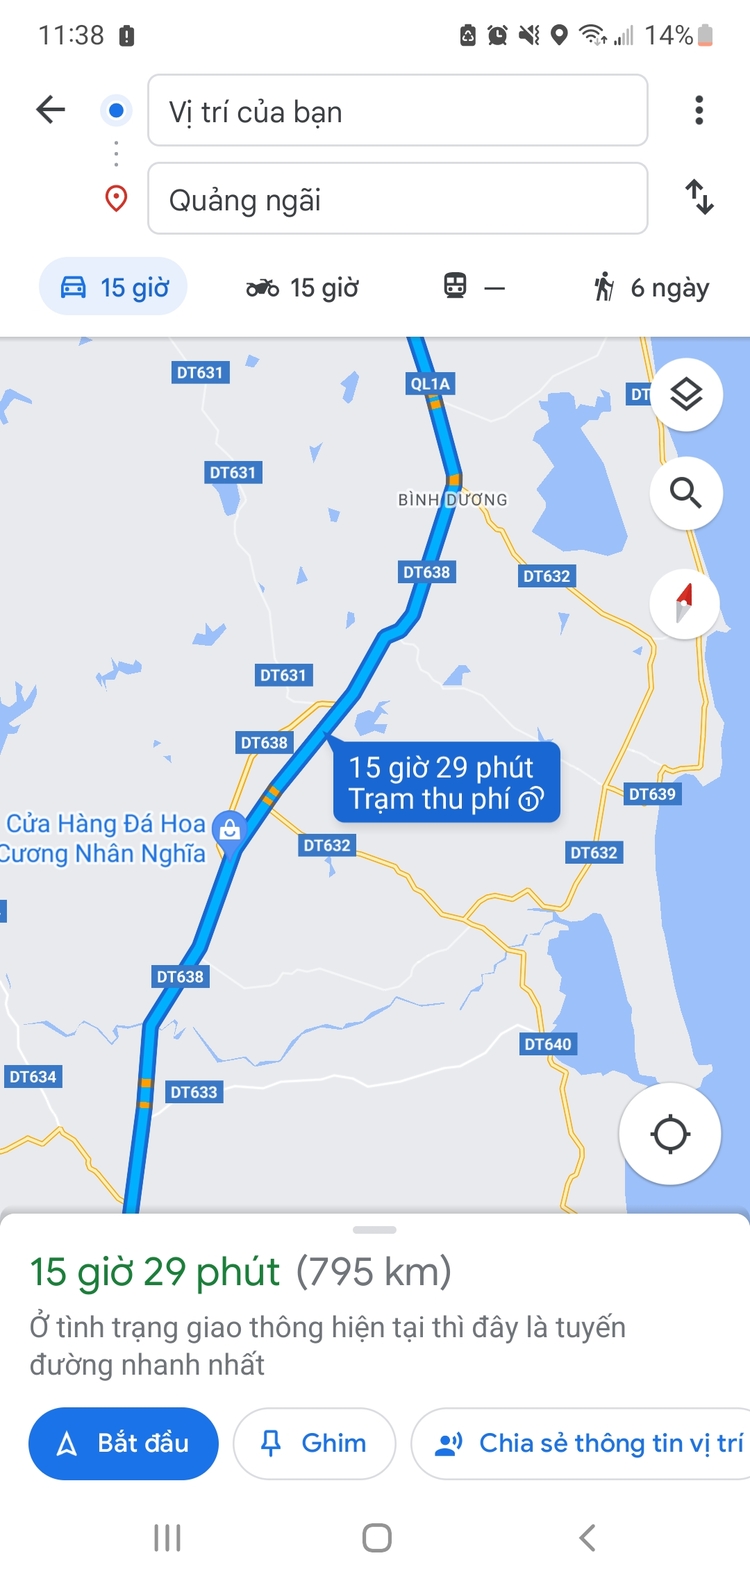 Xin kinh nghiệm tuyến đường từ SG về Quảng Ngãi